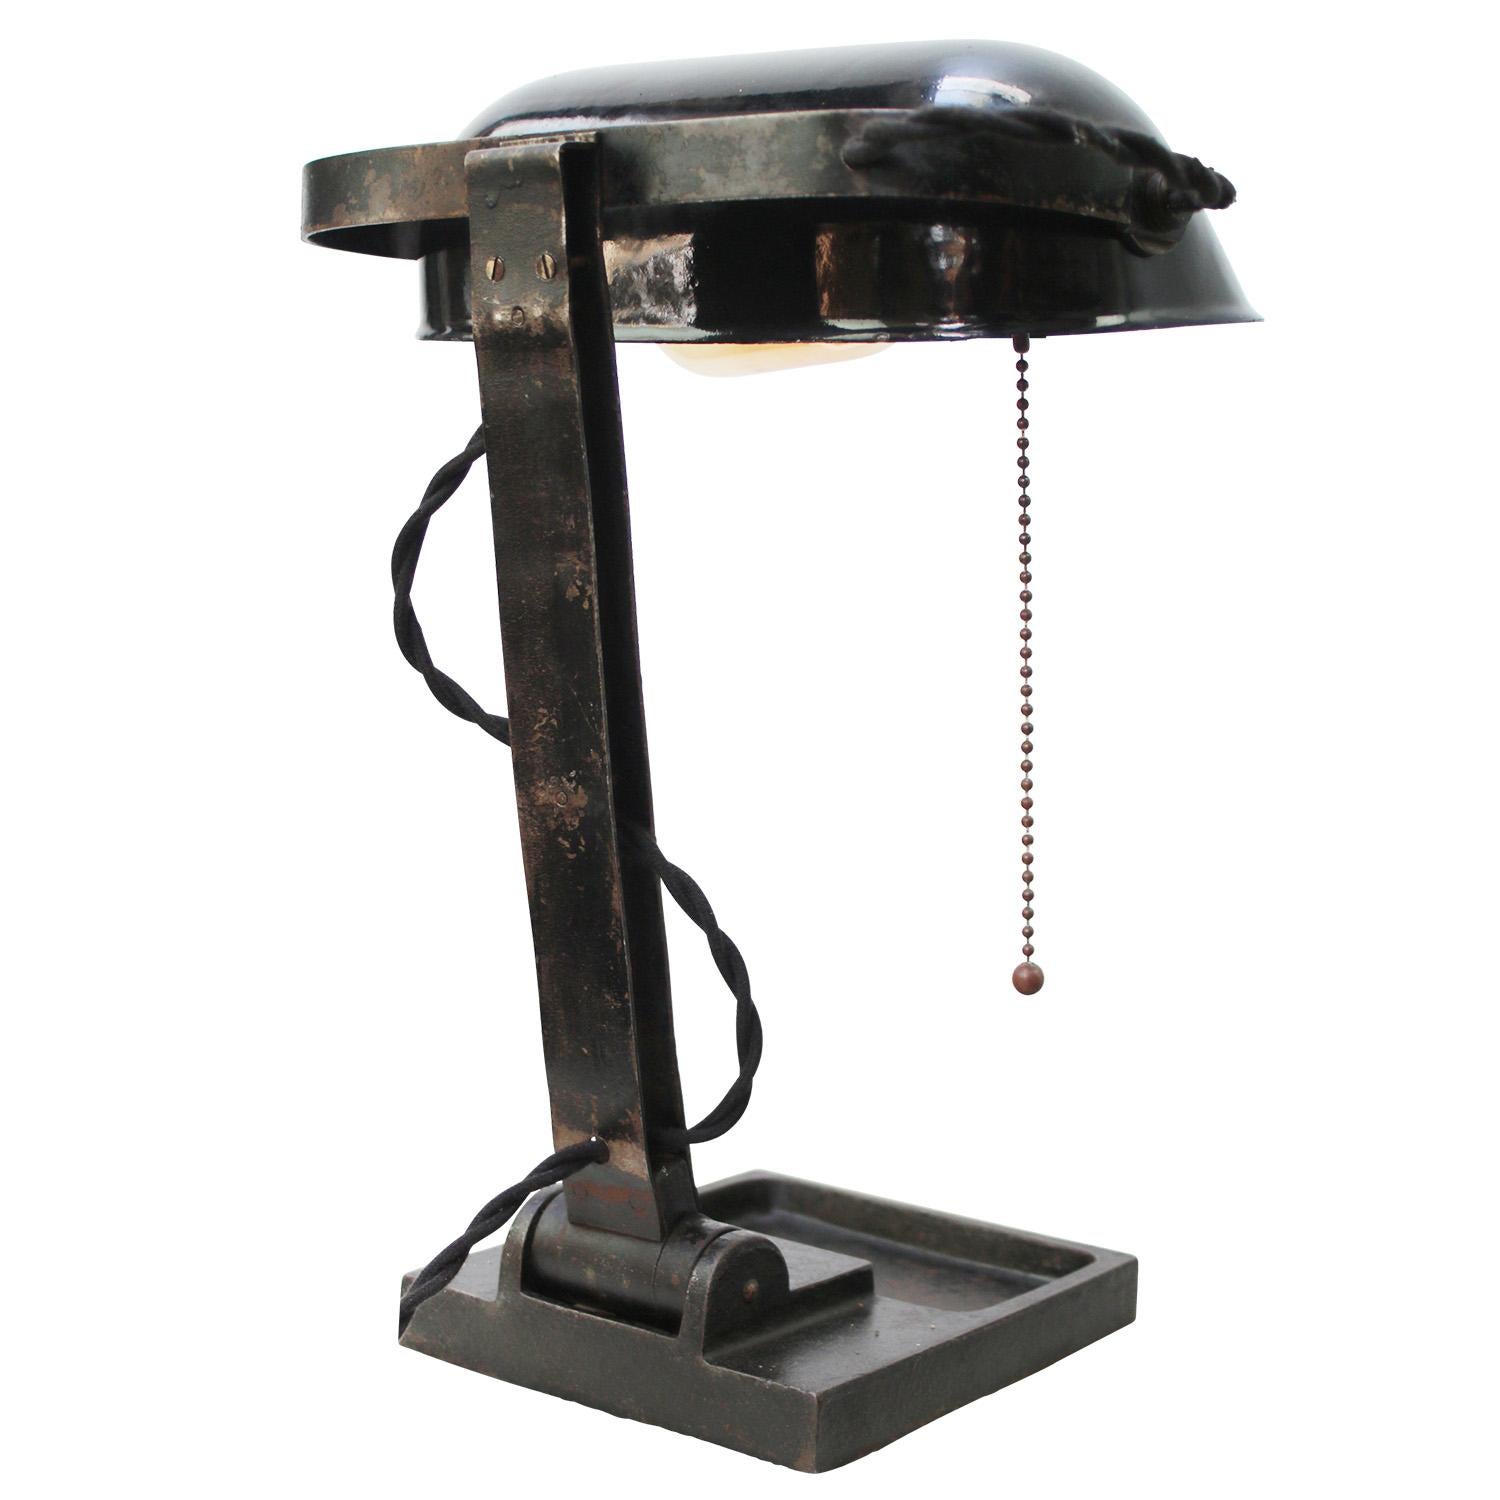 Cast Black Enamel Vintage Industrial Banker Light Table Desk Light